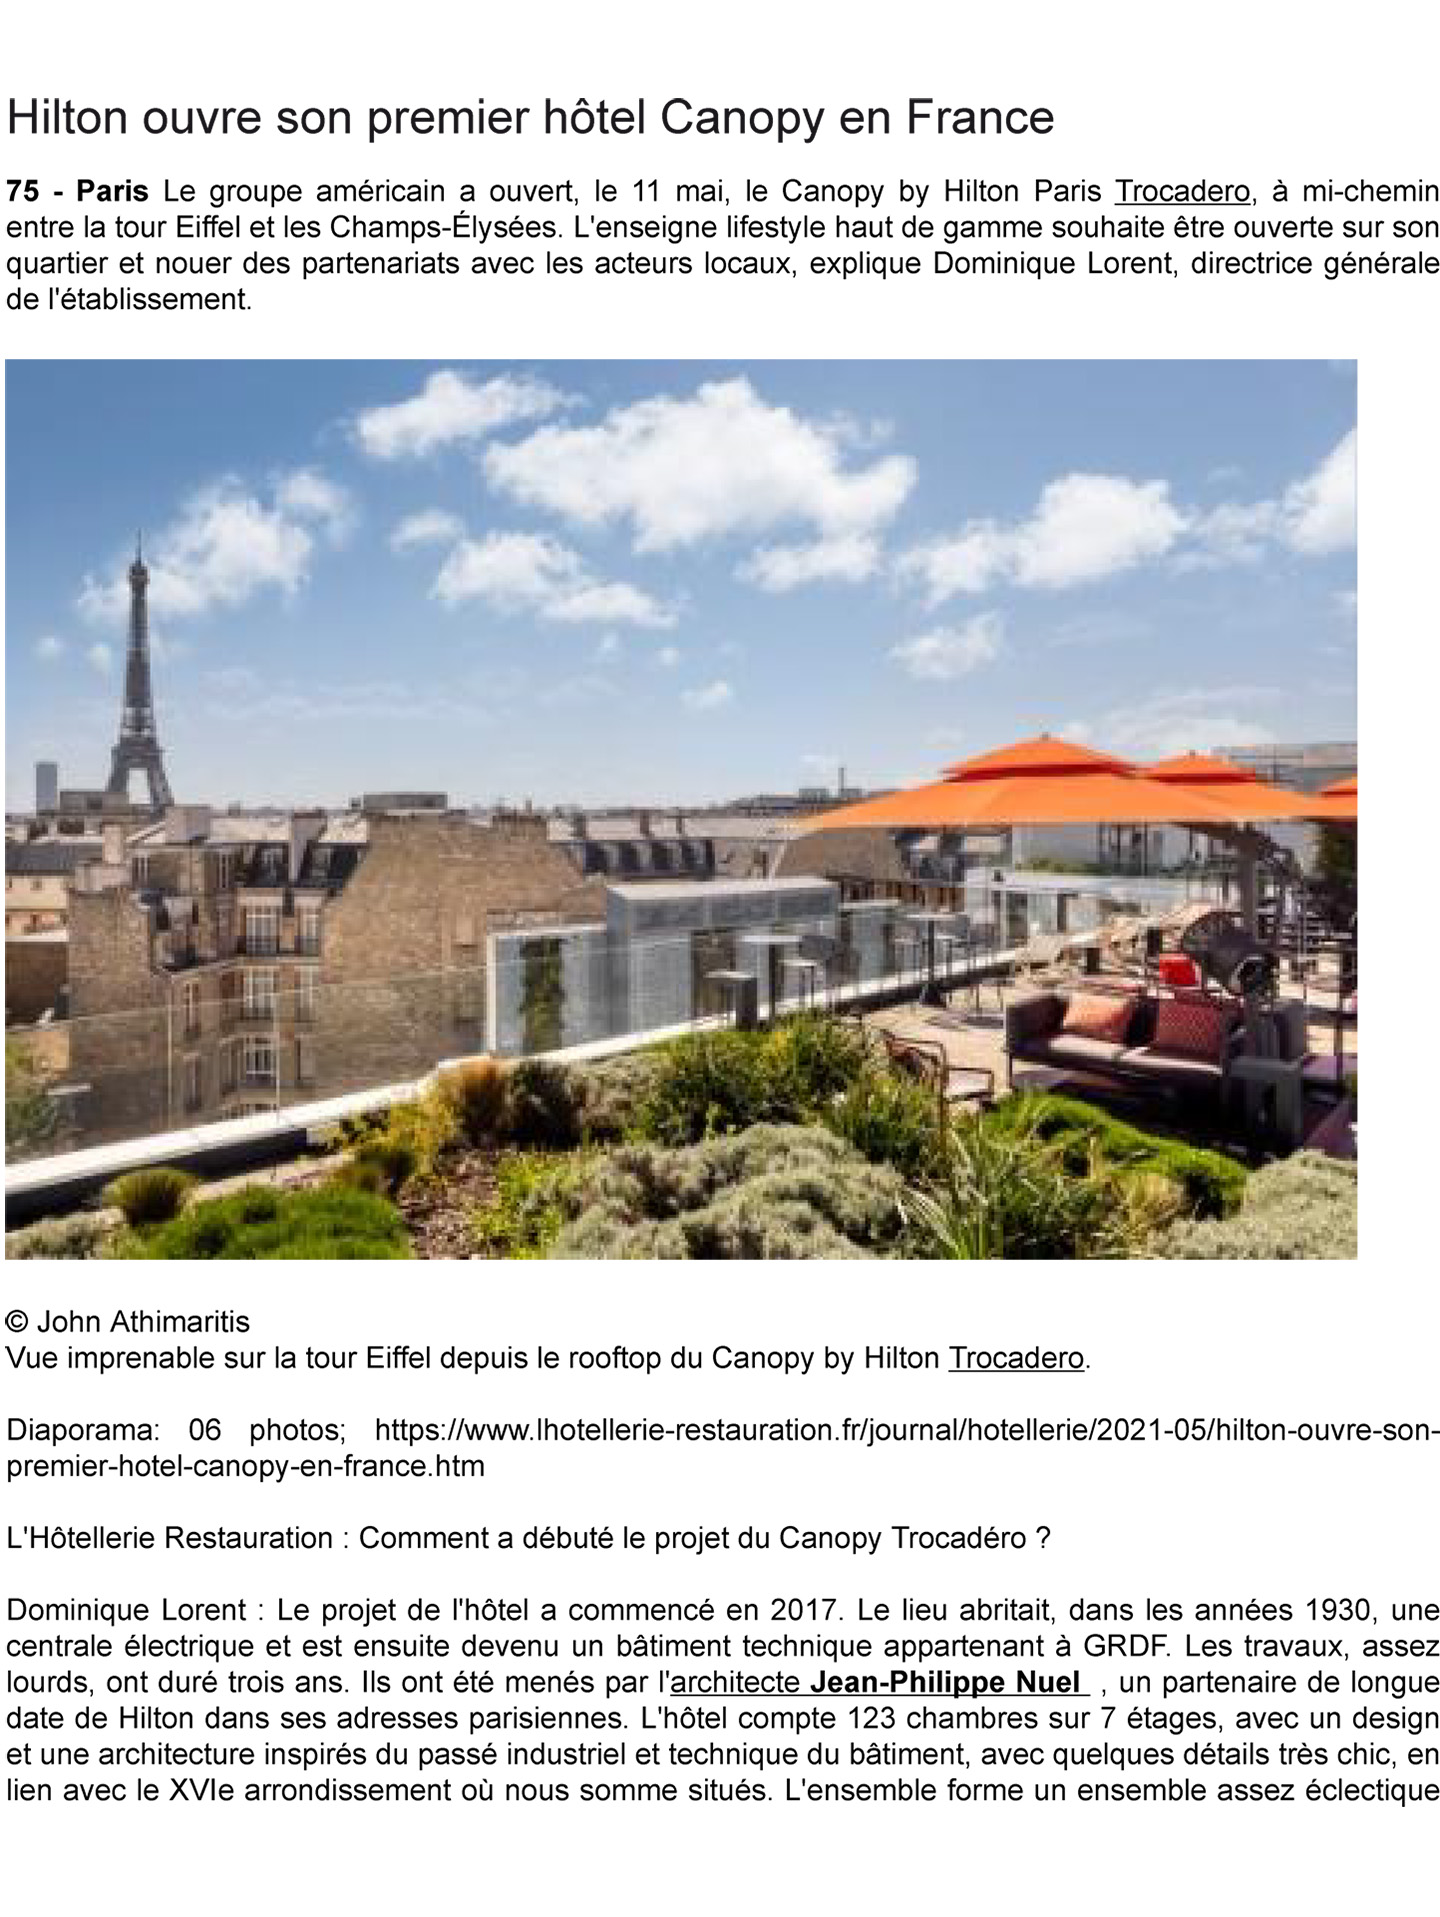 Article sur le Canopy by Hilton Paris Trocadéro réalisé par le studio jean-Philippe Nuel dans le magazine l'hotellerie restauration, nouvel hotel lifestyle, architecture d'intérieur de luxe